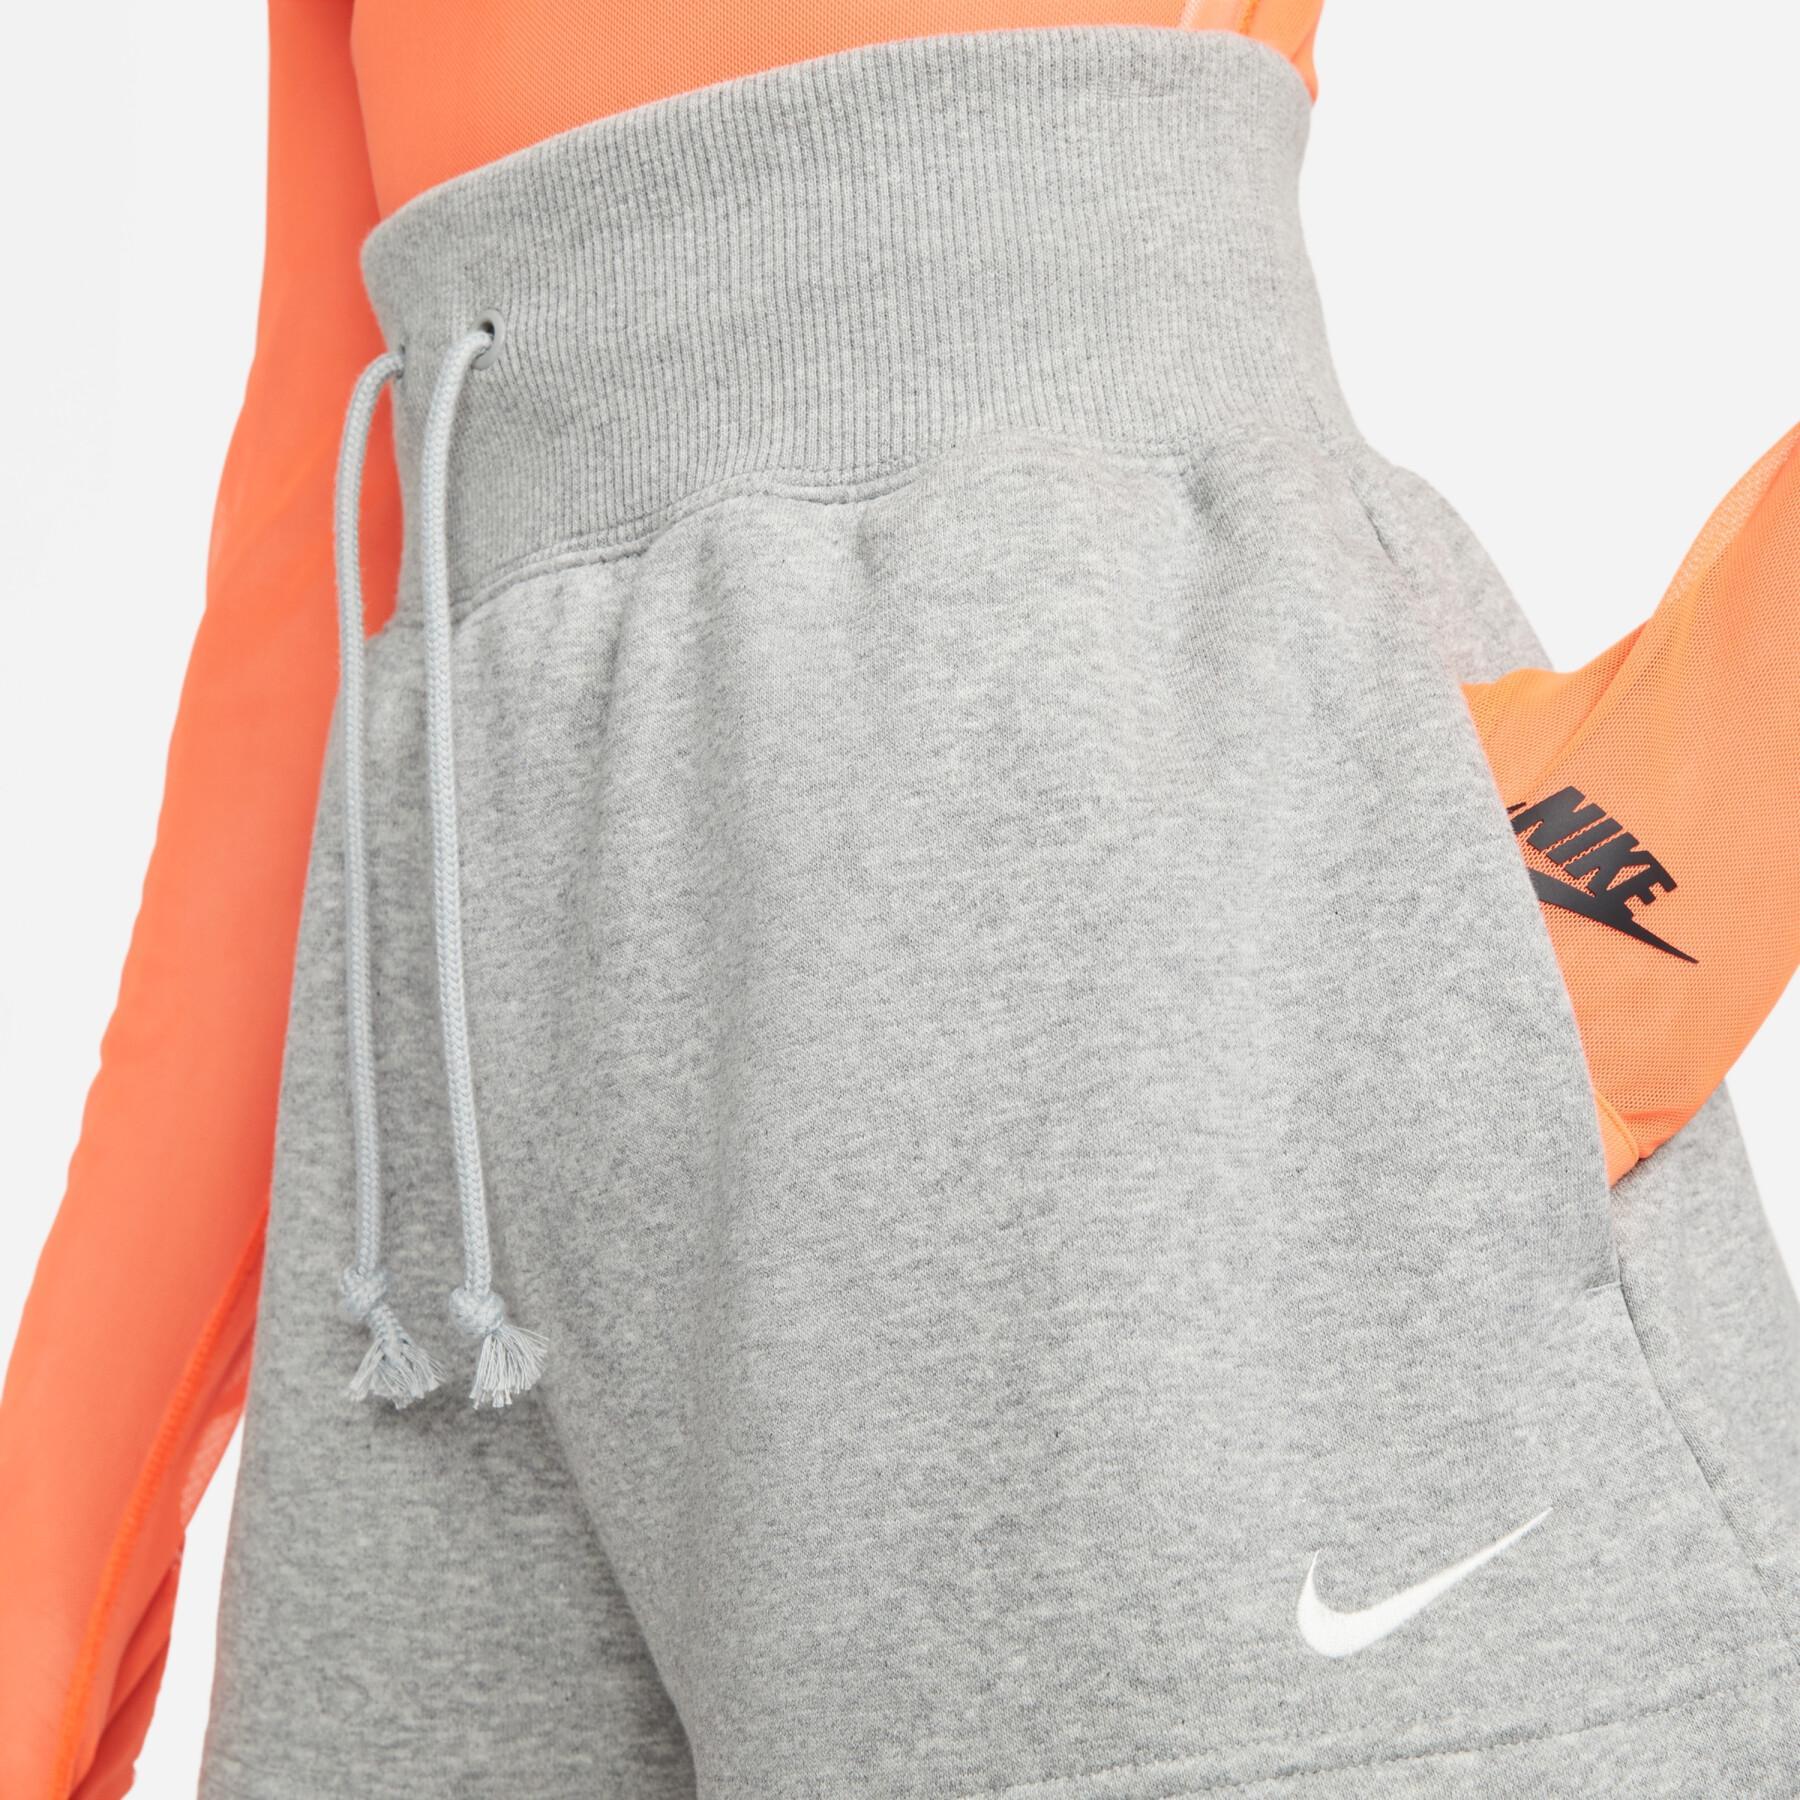 Calções de cintura alta para mulheres Nike Phoenix Fleece